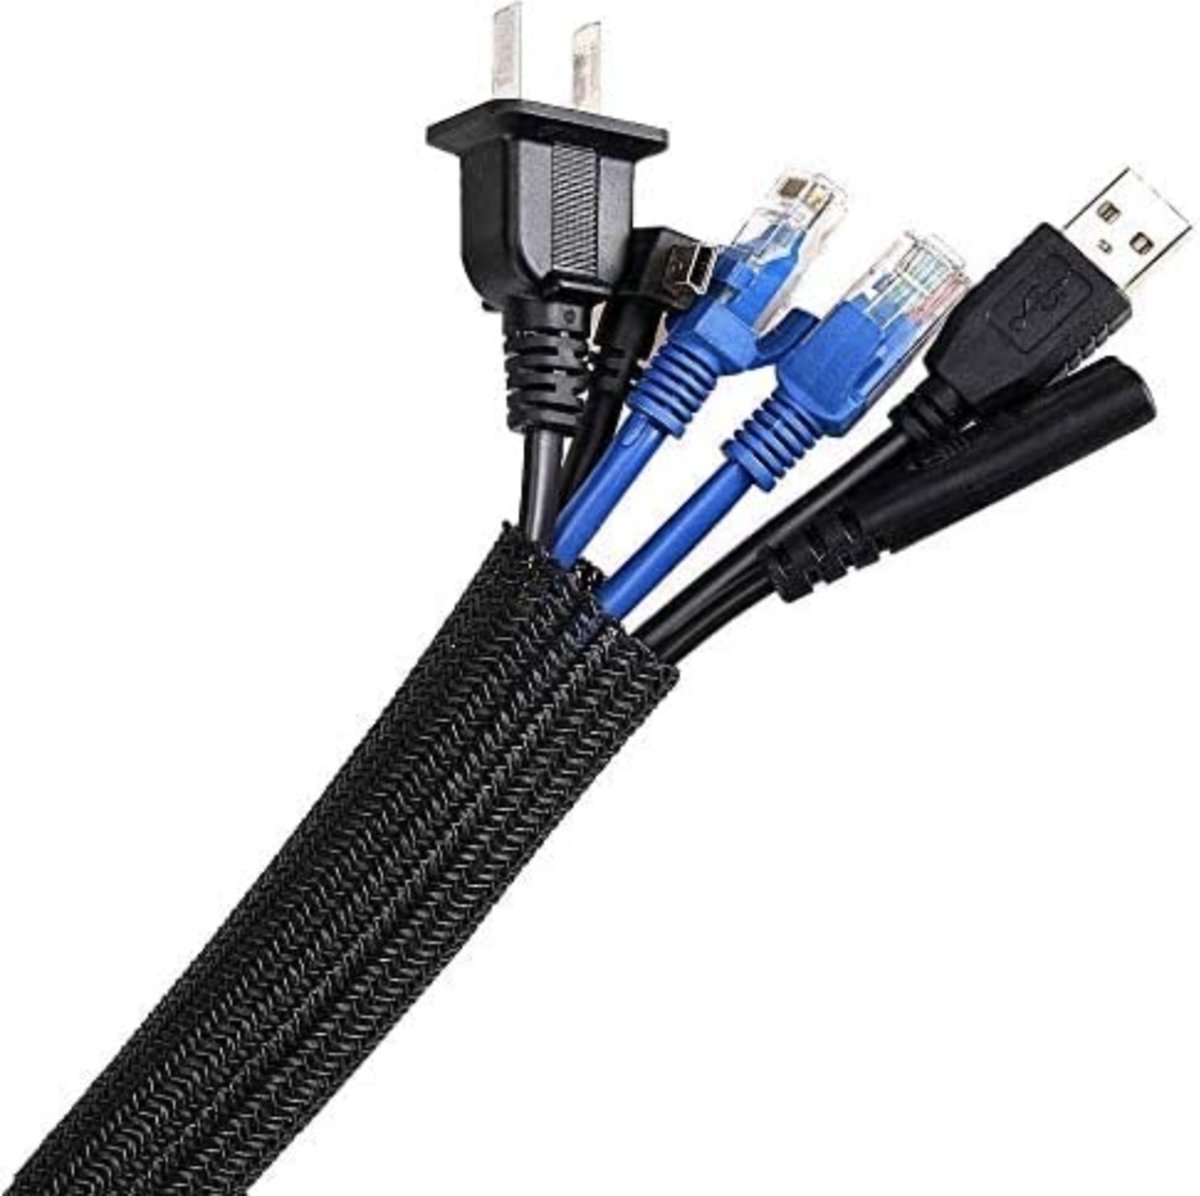 LAUWG - 3 m Kabelslang, 12-20 mm, zelfsluitend kabelkanaal, flexibel geweven kabelmantel, kabelmanagement voor bureau, TV, computer, pc, kabelbescherming voor hond, kat, zwart